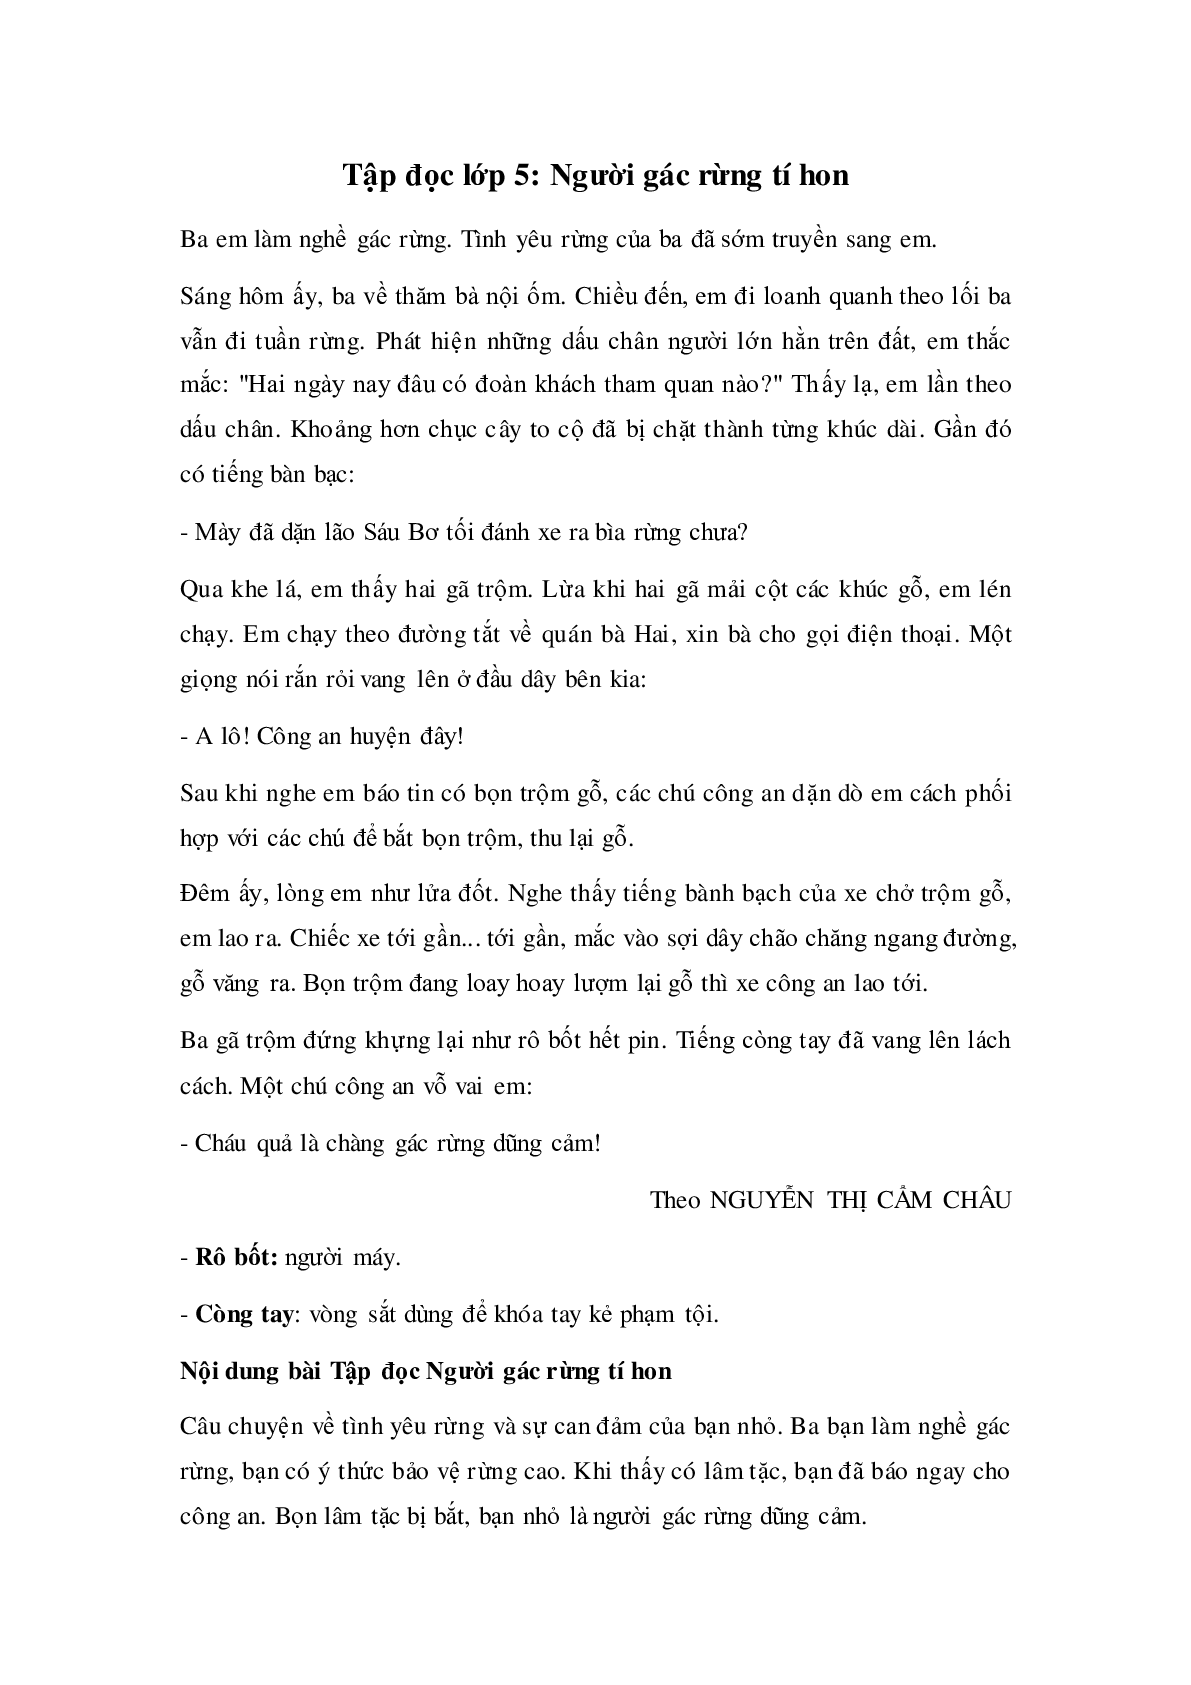 Soạn Tiếng Việt lớp 5: Tập đọc: Người gác rừng tí hon mới nhất (trang 1)